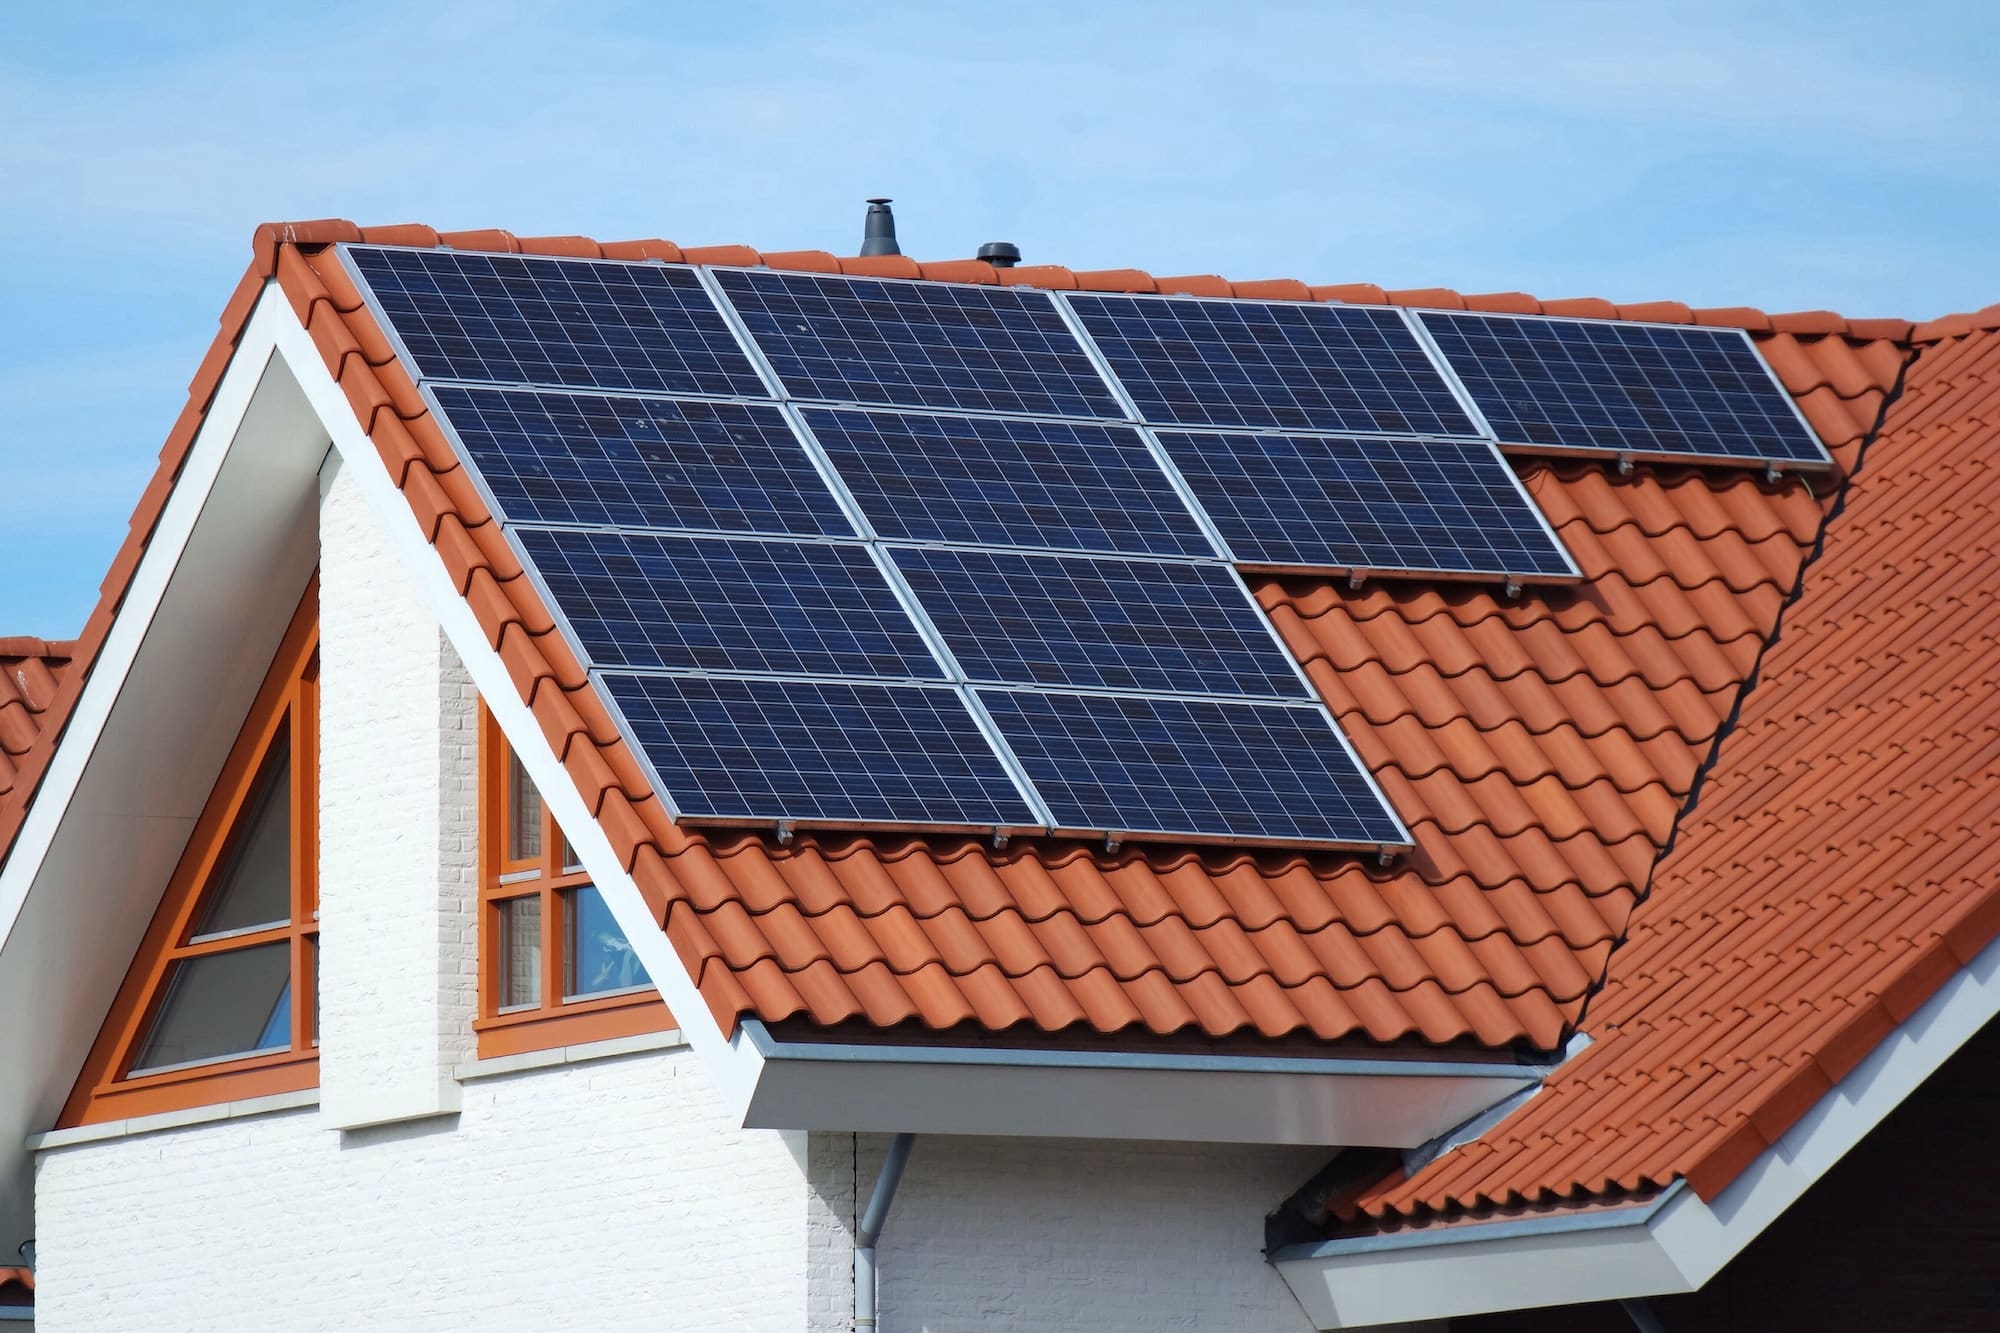 Choisir entre les types de panneaux solaires : Photovoltaïque, thermique ou hybride